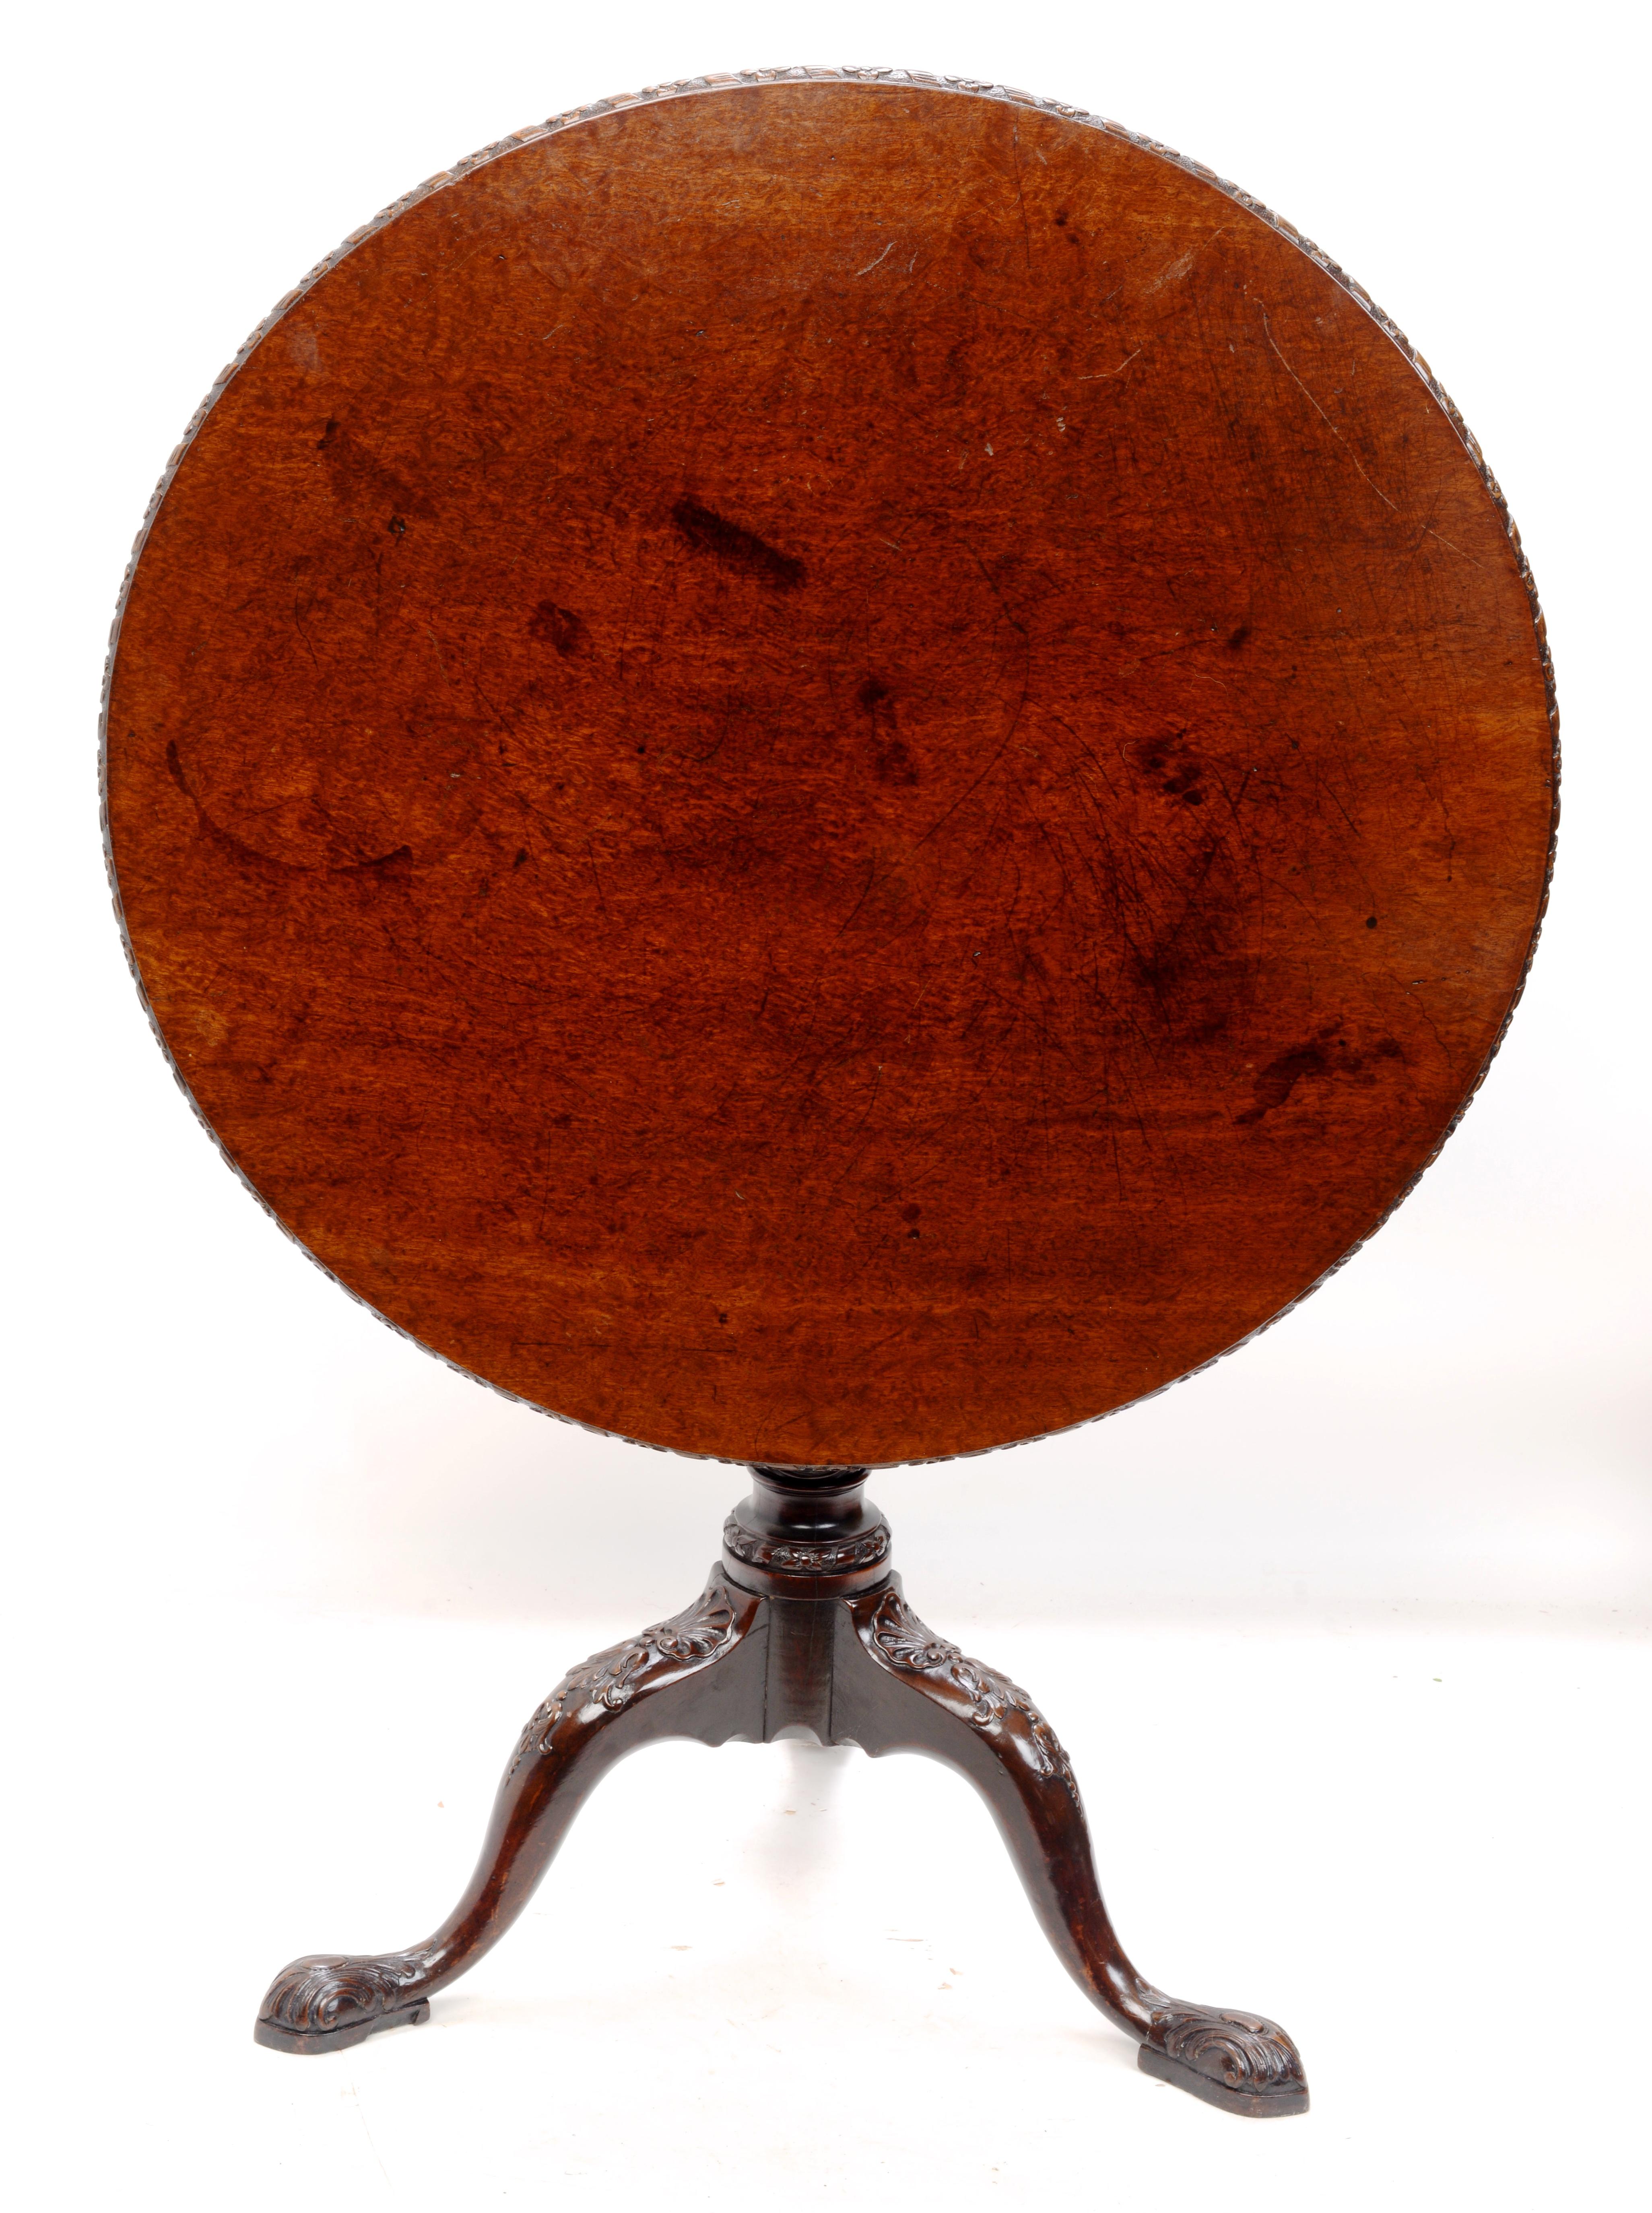 Irischer Geo II Plum Pudding Mahagoni Kipp- und Dreh-Tee-Tisch, um 1750. Wunderschön geschnitzte Platte, Beine, Sockel und Füße. Der Tisch hat eine tolle, reiche Patina. Die runde Platte hat eine floral geschnitzte Umrandung. Der Deckel sitzt auf